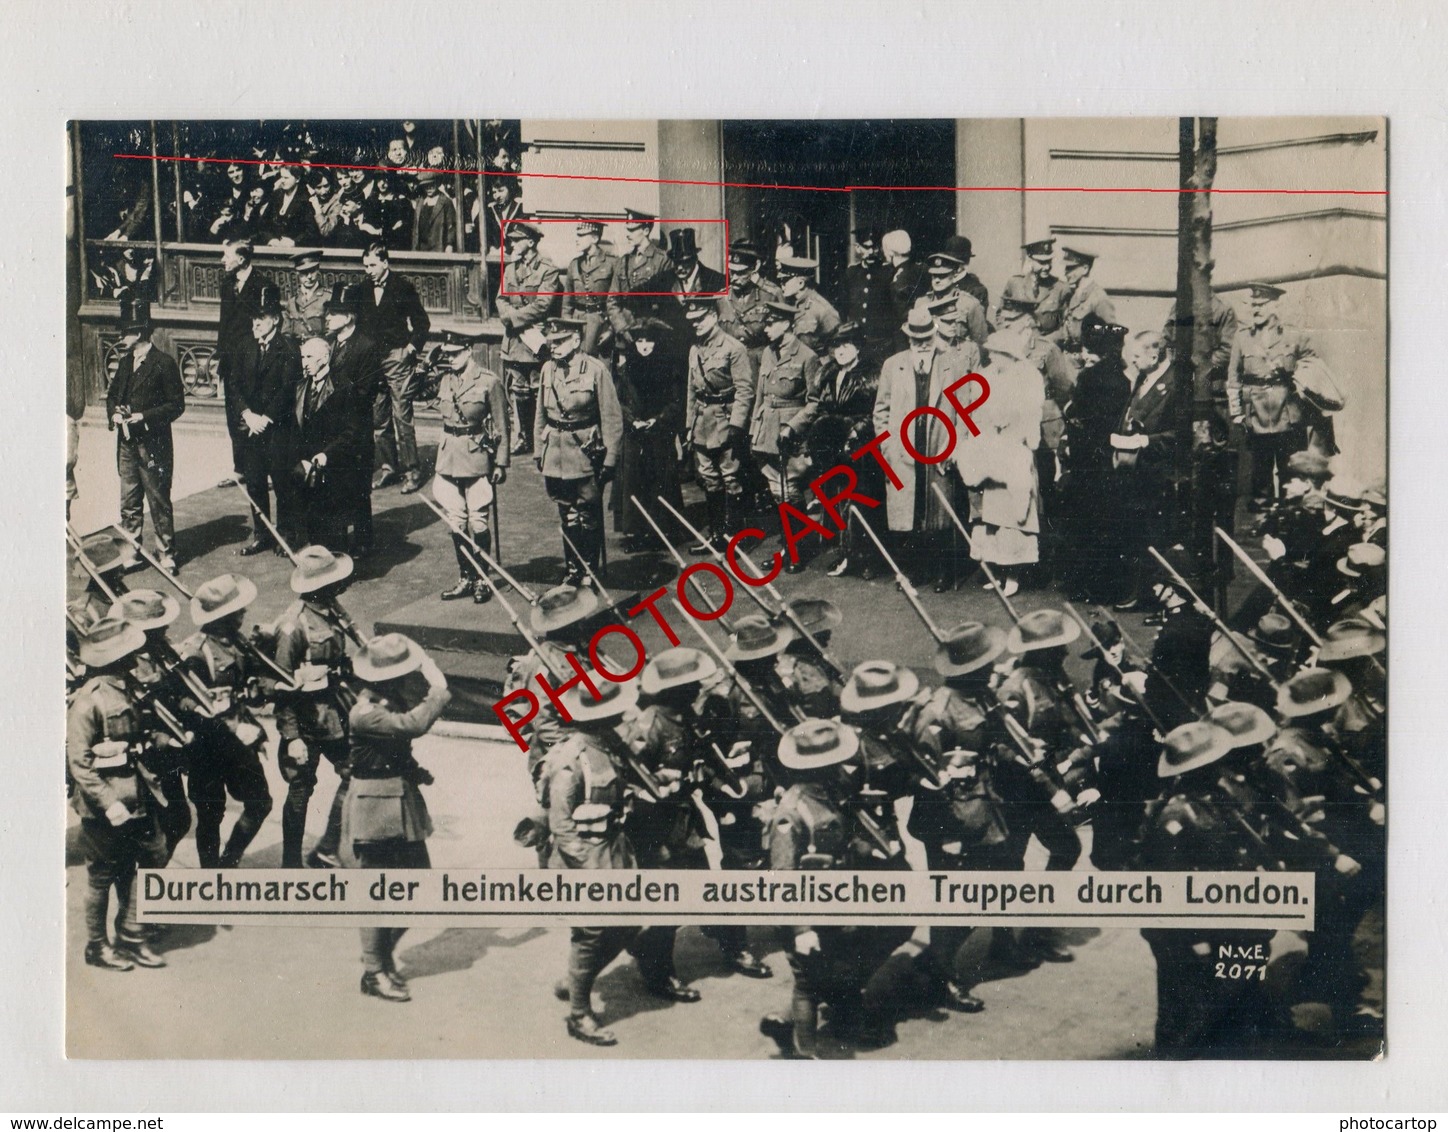 LONDON-Retour Troupes AUSTRALIENNES-Guerre 14-18-1WK-Grosse PHOTO Allemande-N.V.E. - Guerra 1914-18